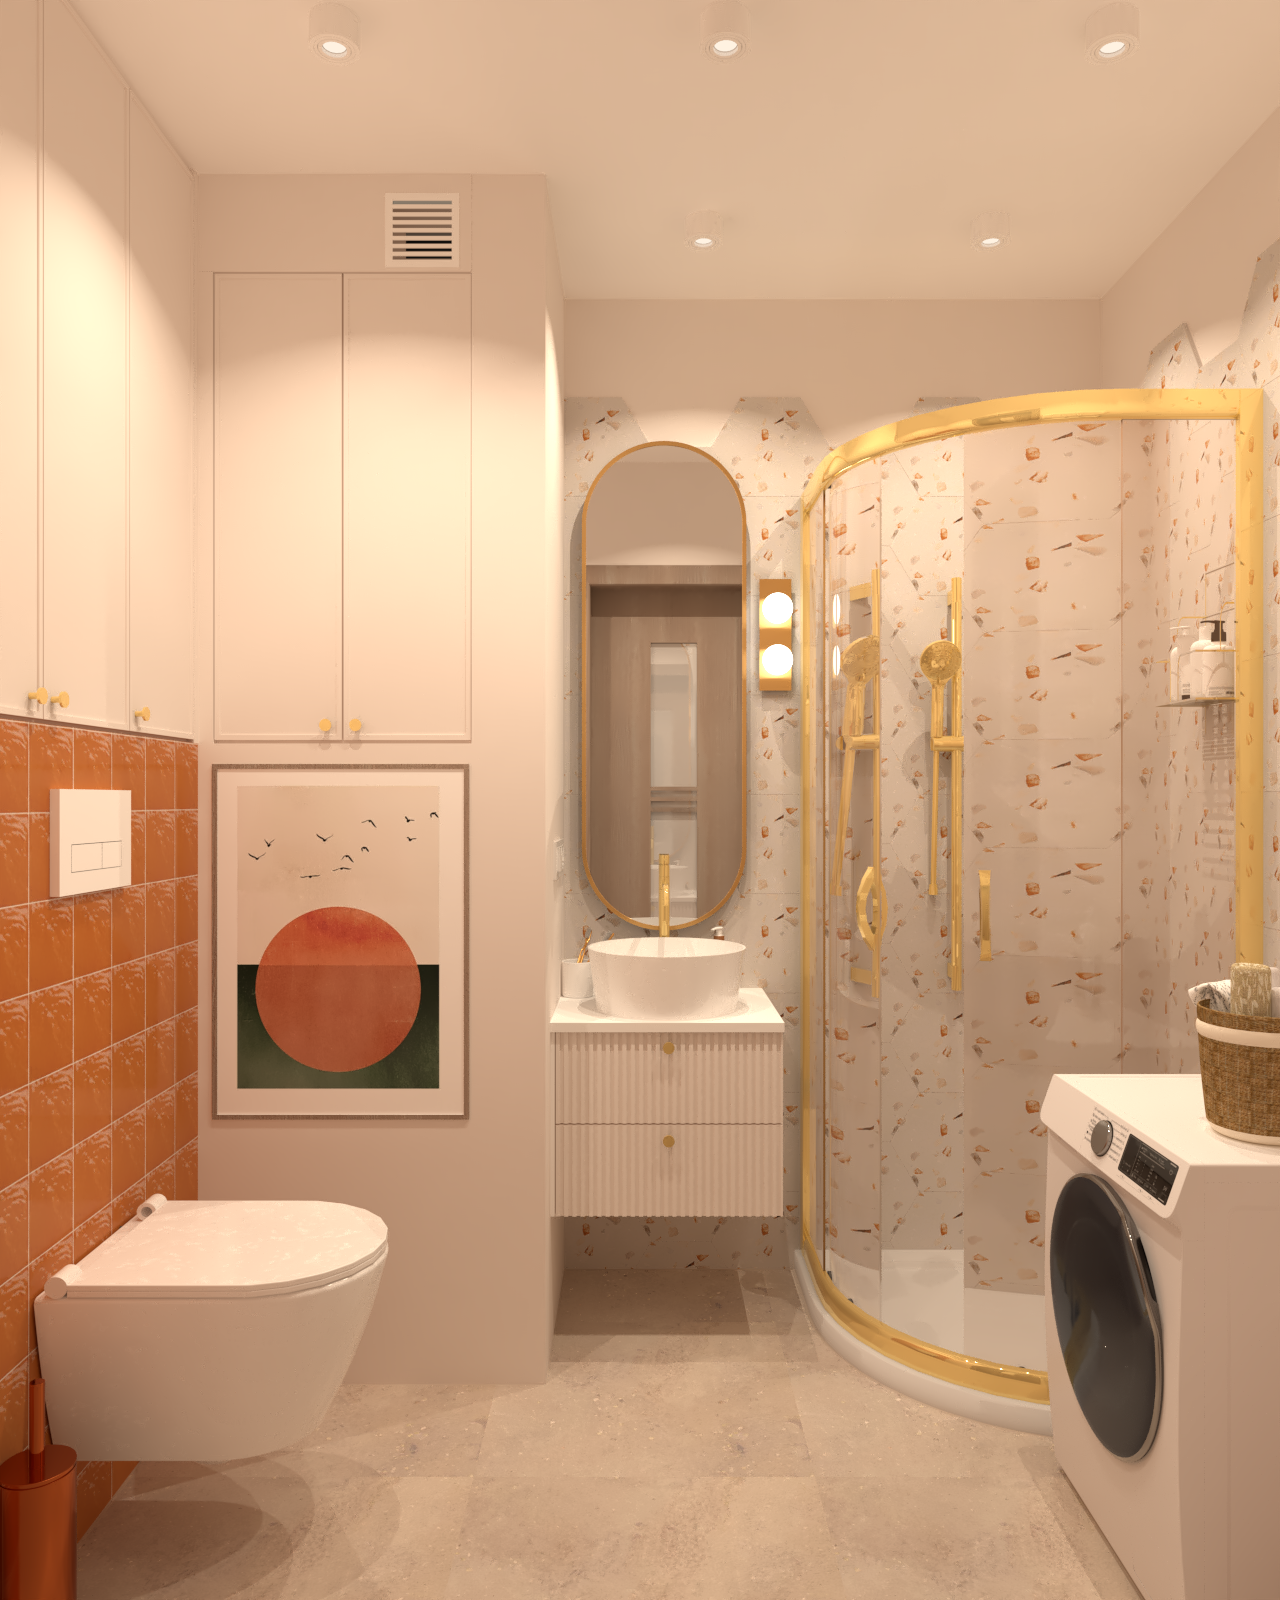 Pomarańczowo beżowa łazienka z elementami złota i heksagonalnymi płytkami.